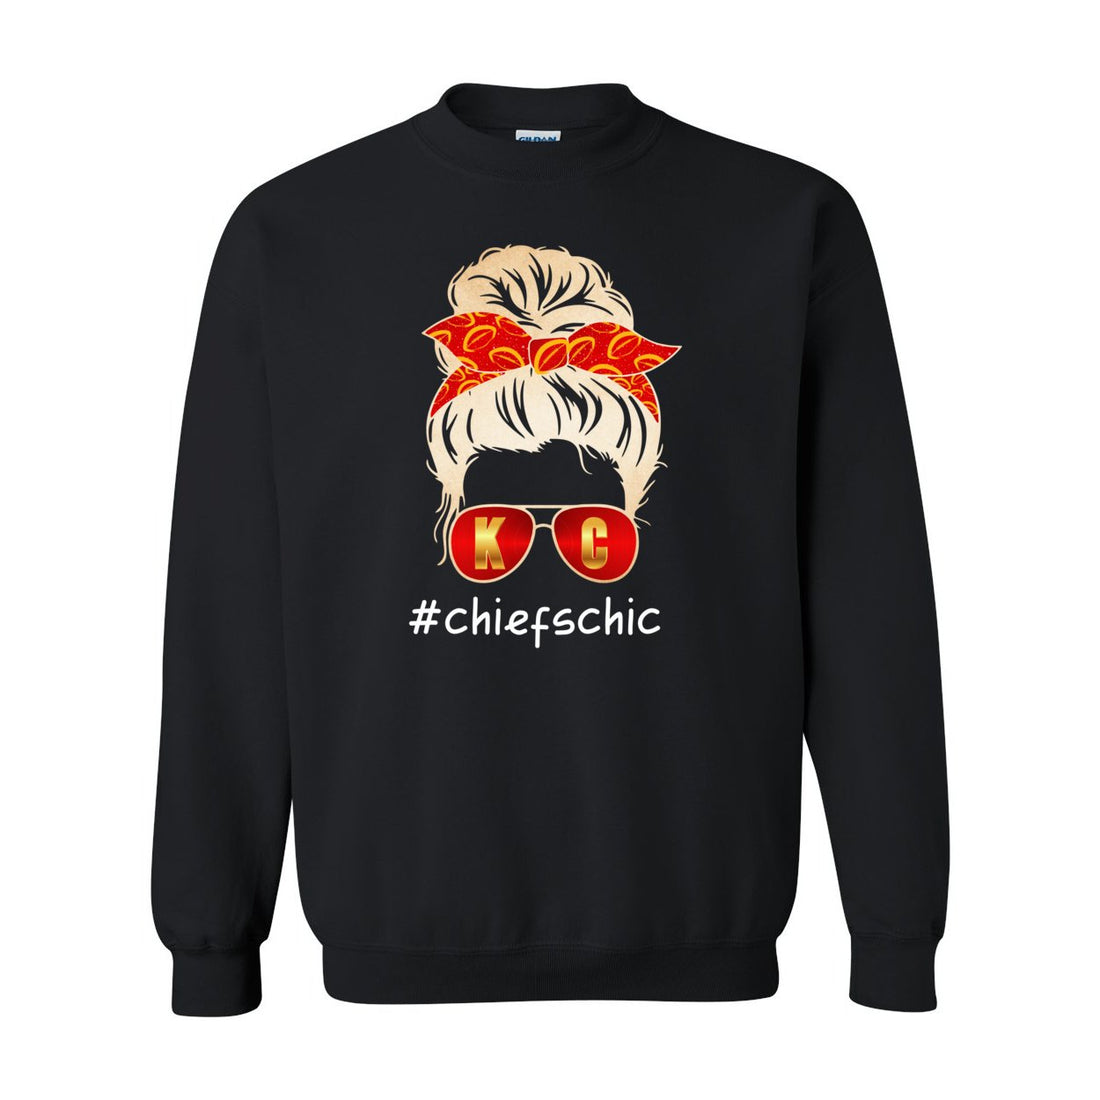 #CHIEFSCHIC Opt 2 Crewneck Sweatshirt - Sweaters/Hoodies - Positively Sassy - #CHIEFSCHIC Opt 2 Crewneck Sweatshirt